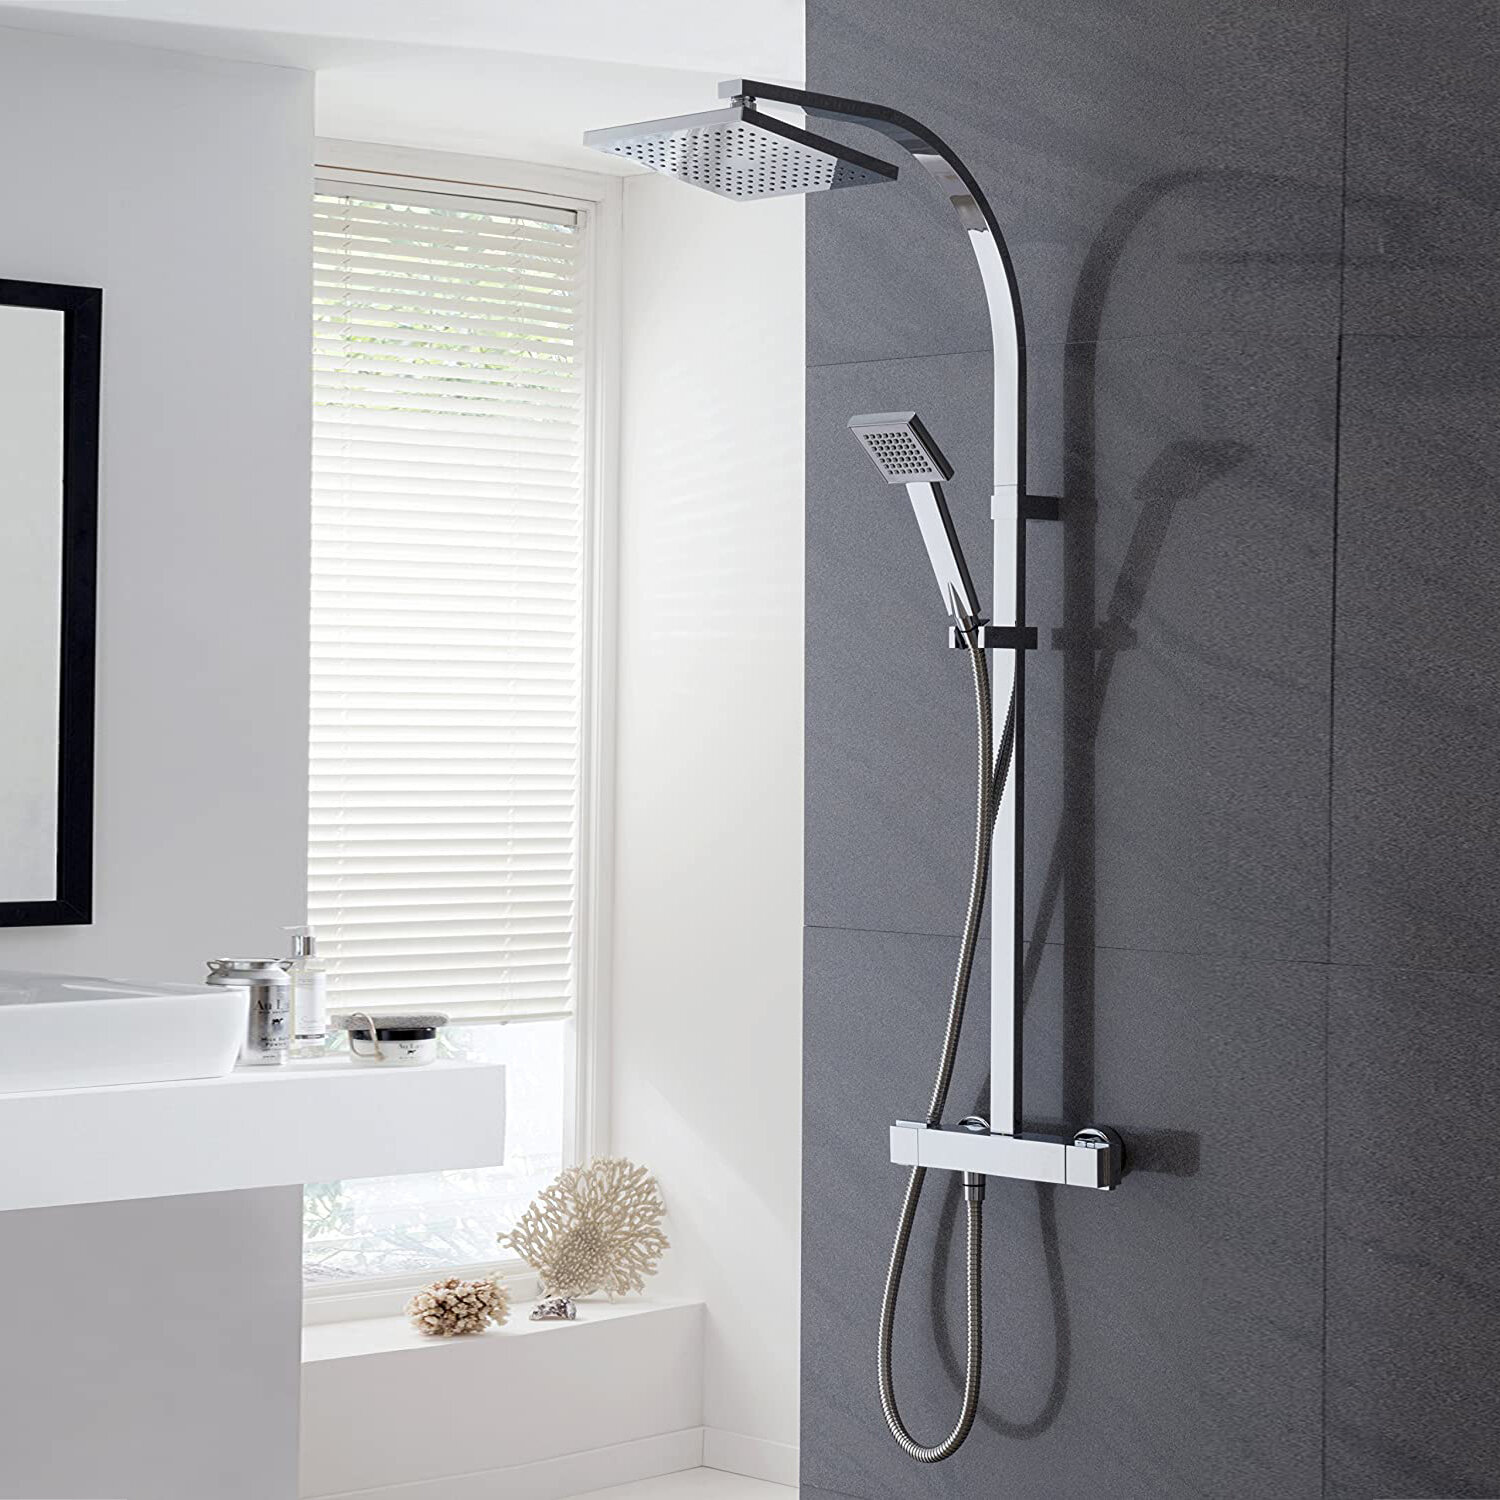 Bath Shower Water-saving Tap Splash Head Nozzle Faucet Regulator Shower Faucet Z